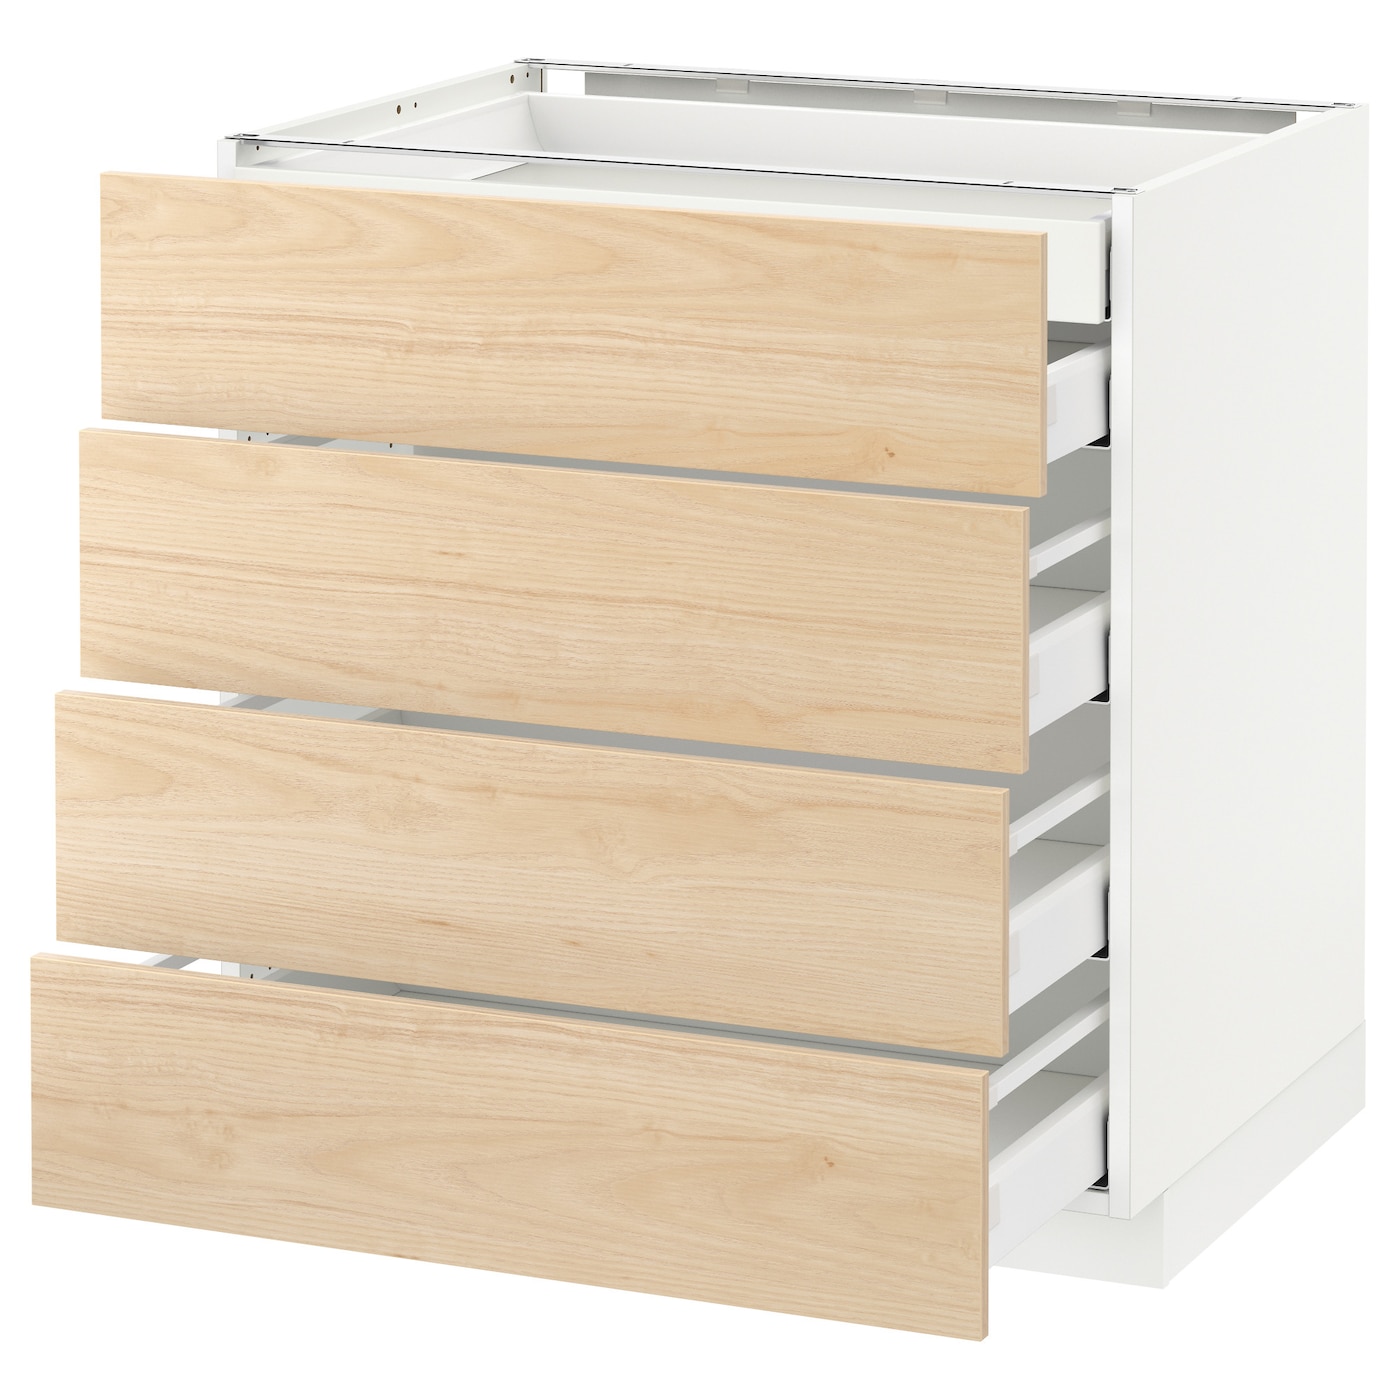 Напольный кухонный шкаф  - IKEA METOD MAXIMERA, 88x61,6x80см, белый/светло-коричневый, МЕТОД МАКСИМЕРА ИКЕА